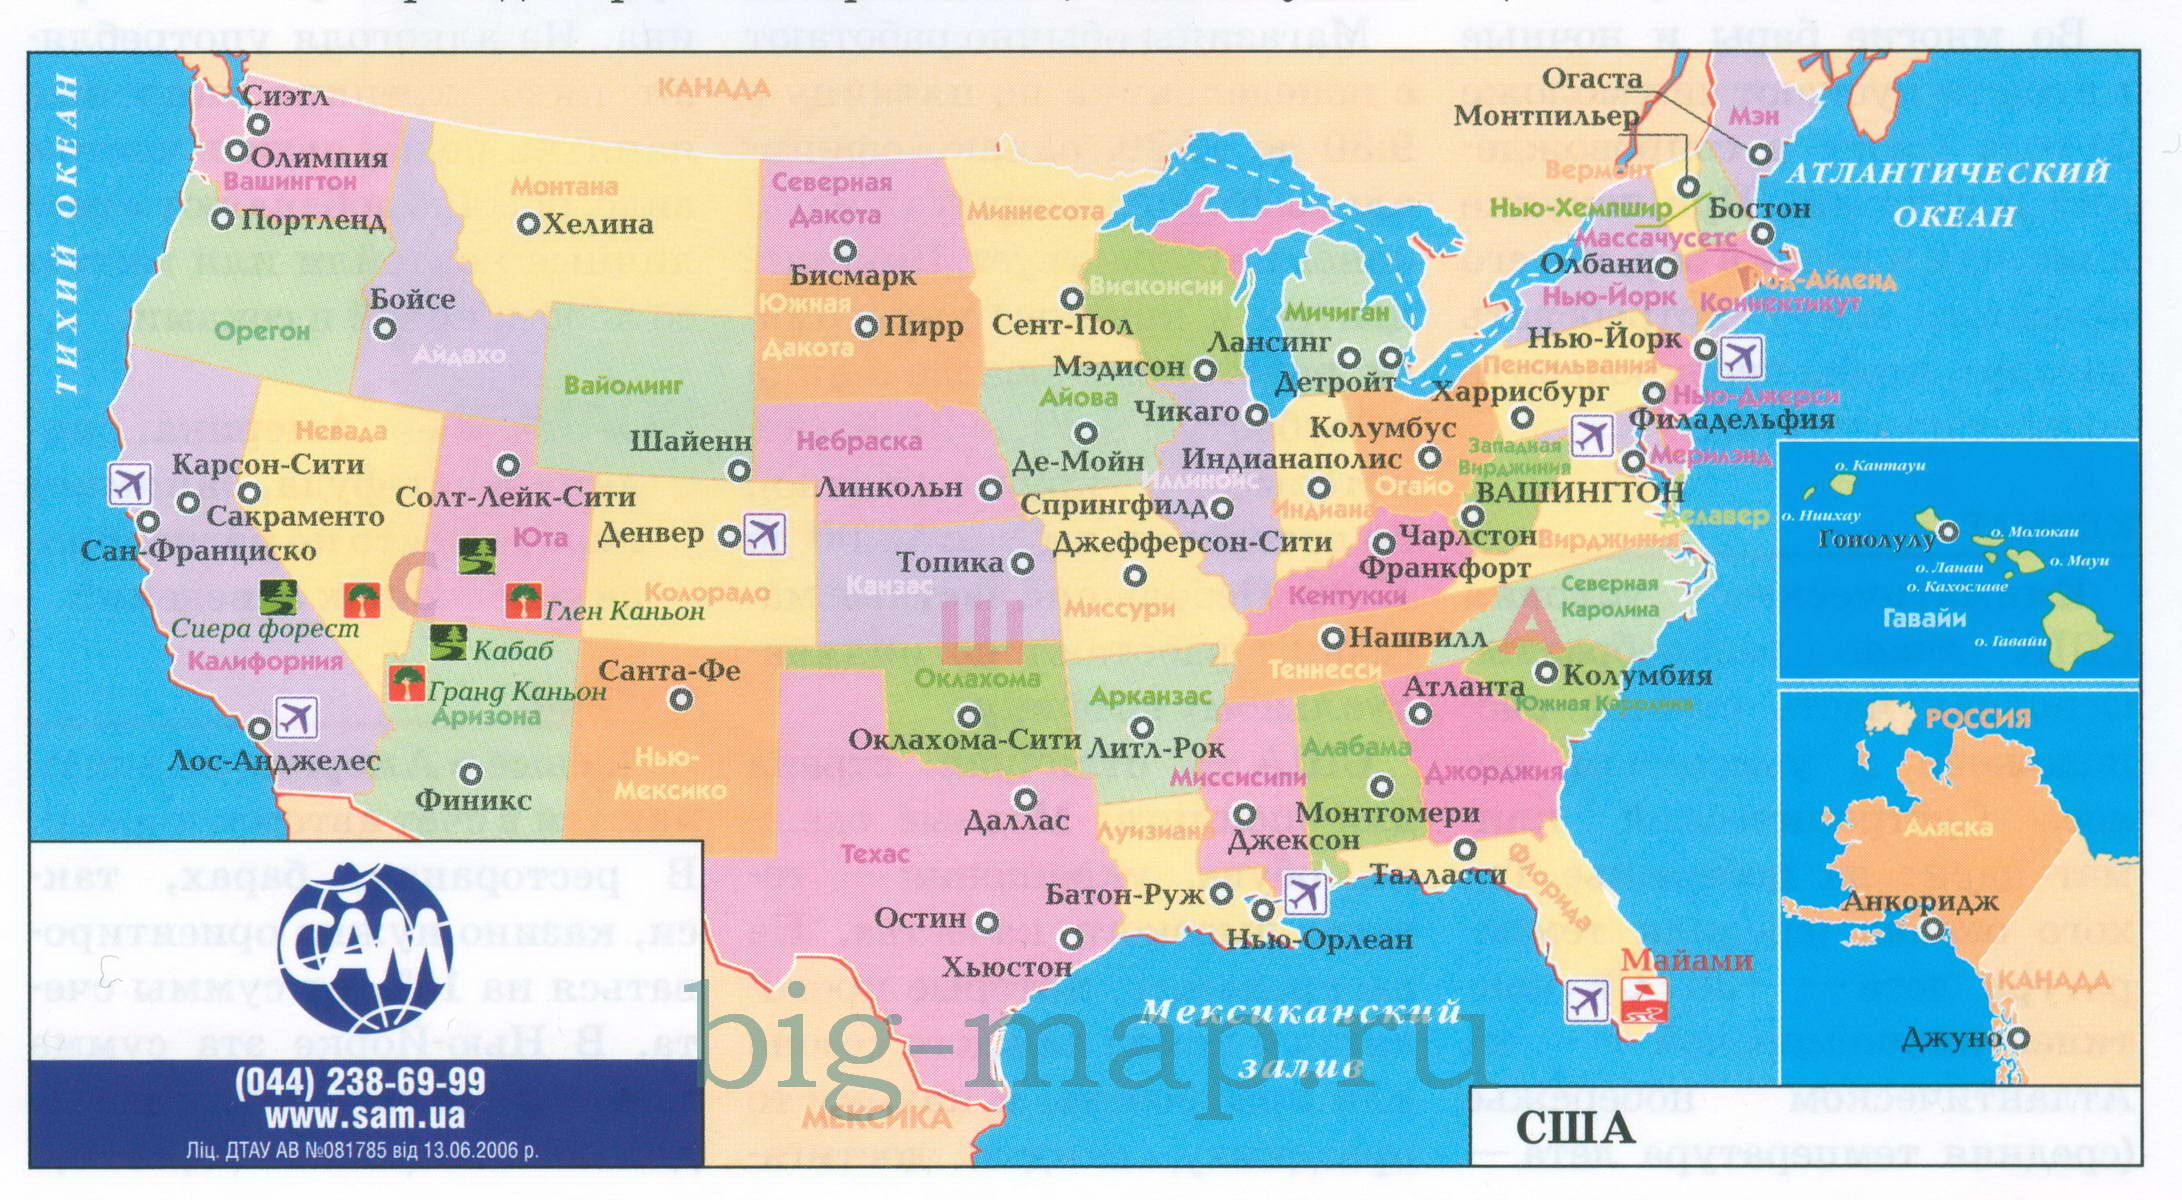 Туристическая карта США на русском языке, A0 - 